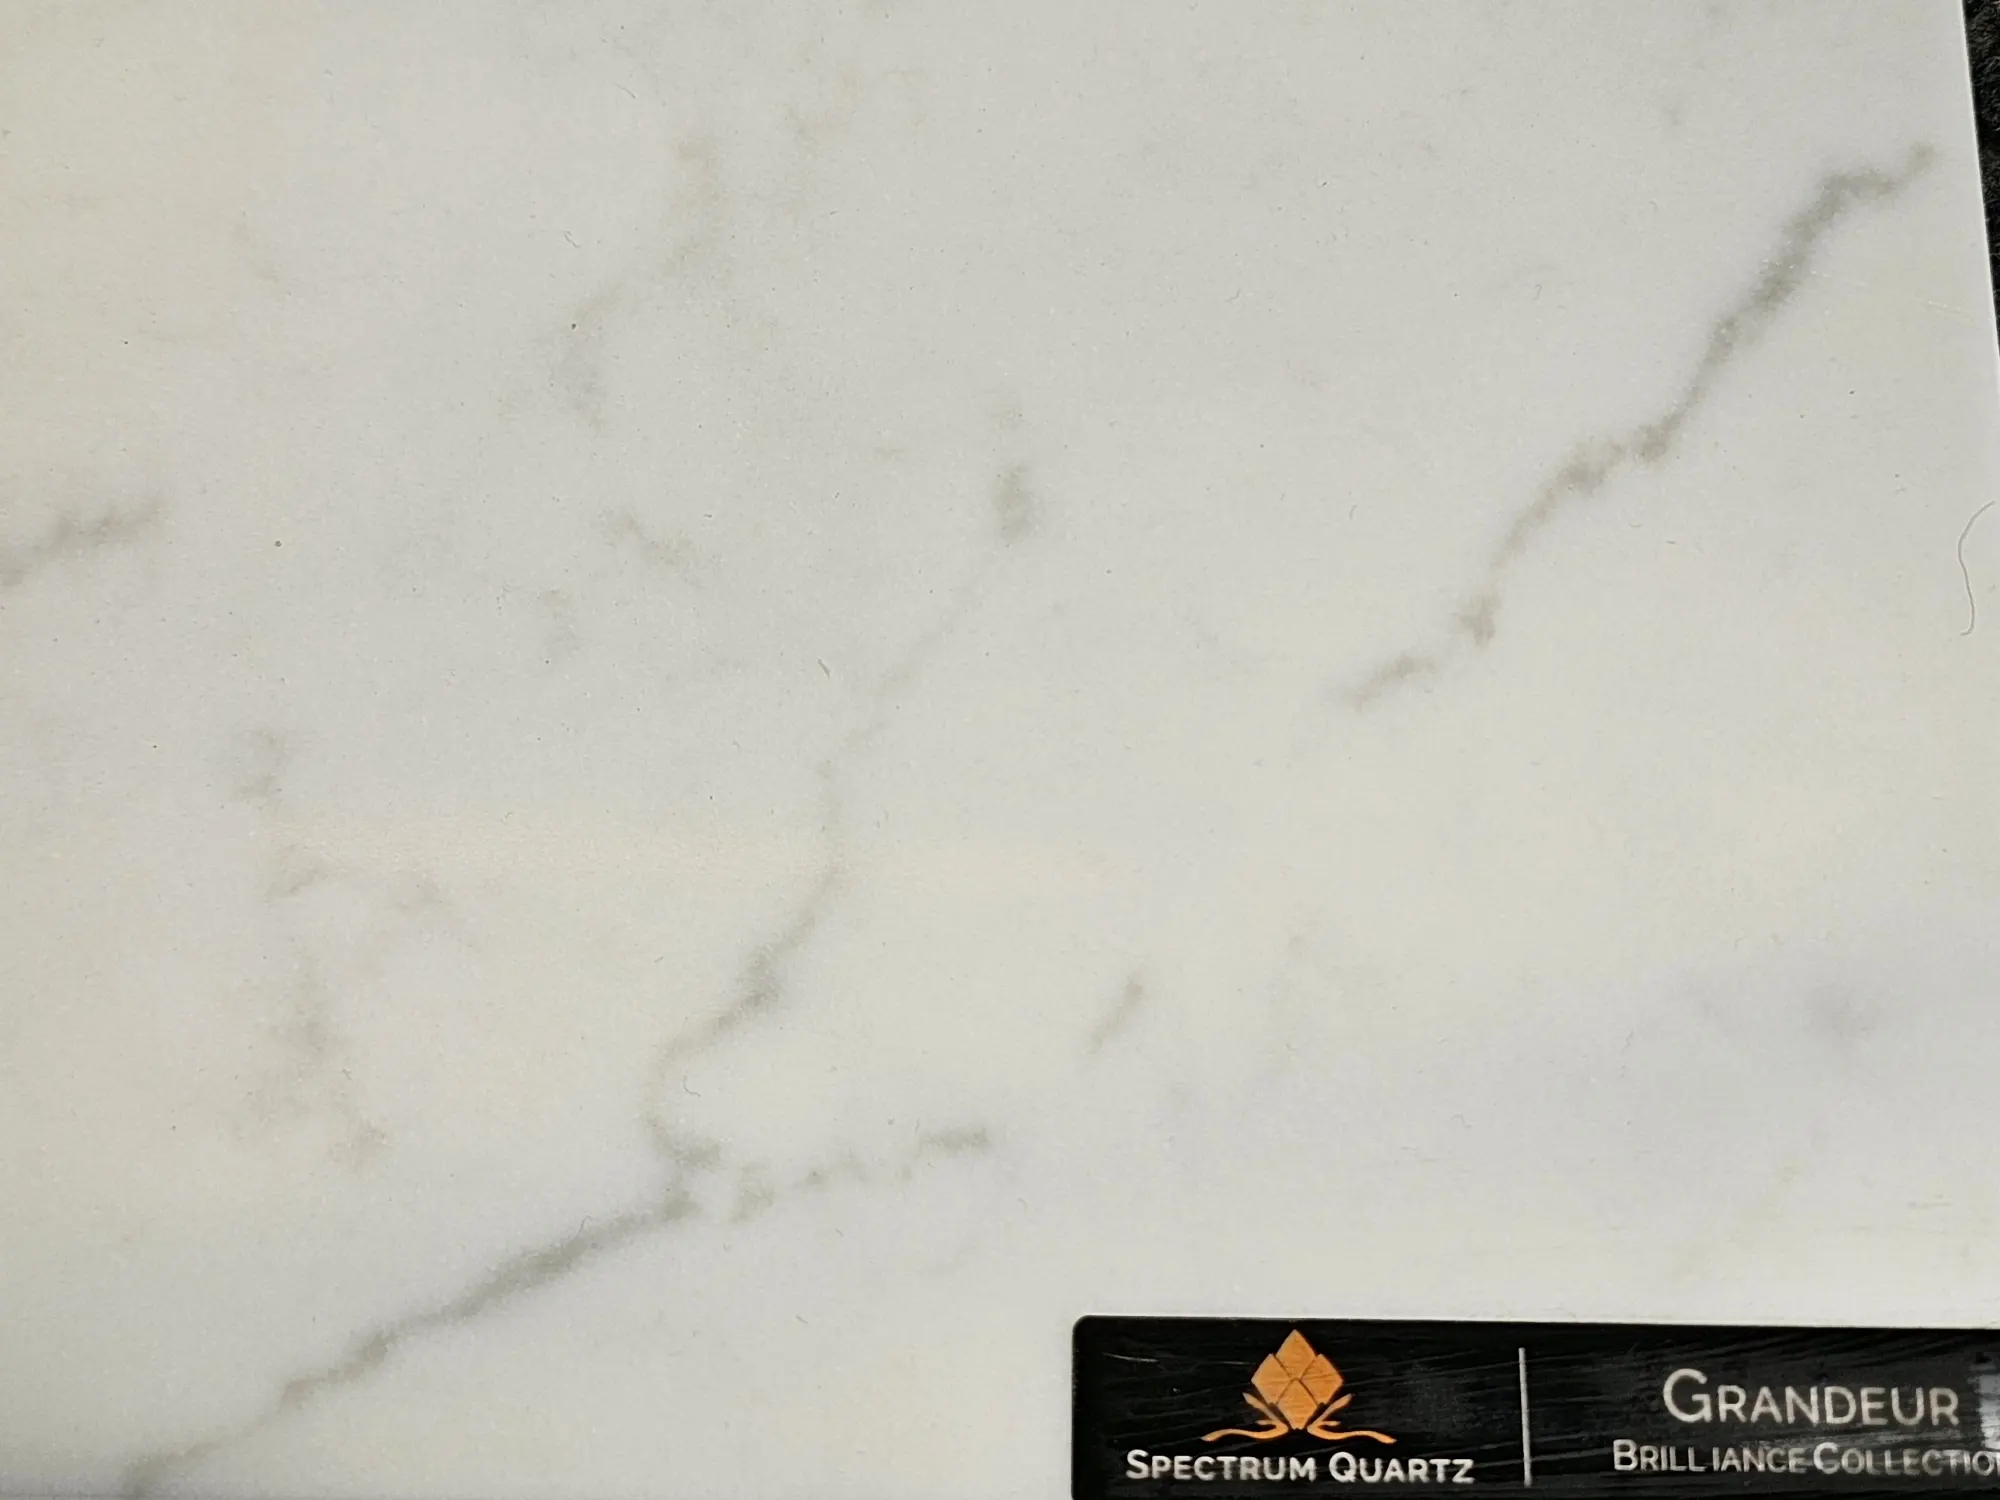 Grandeur spectrum quartz countertop